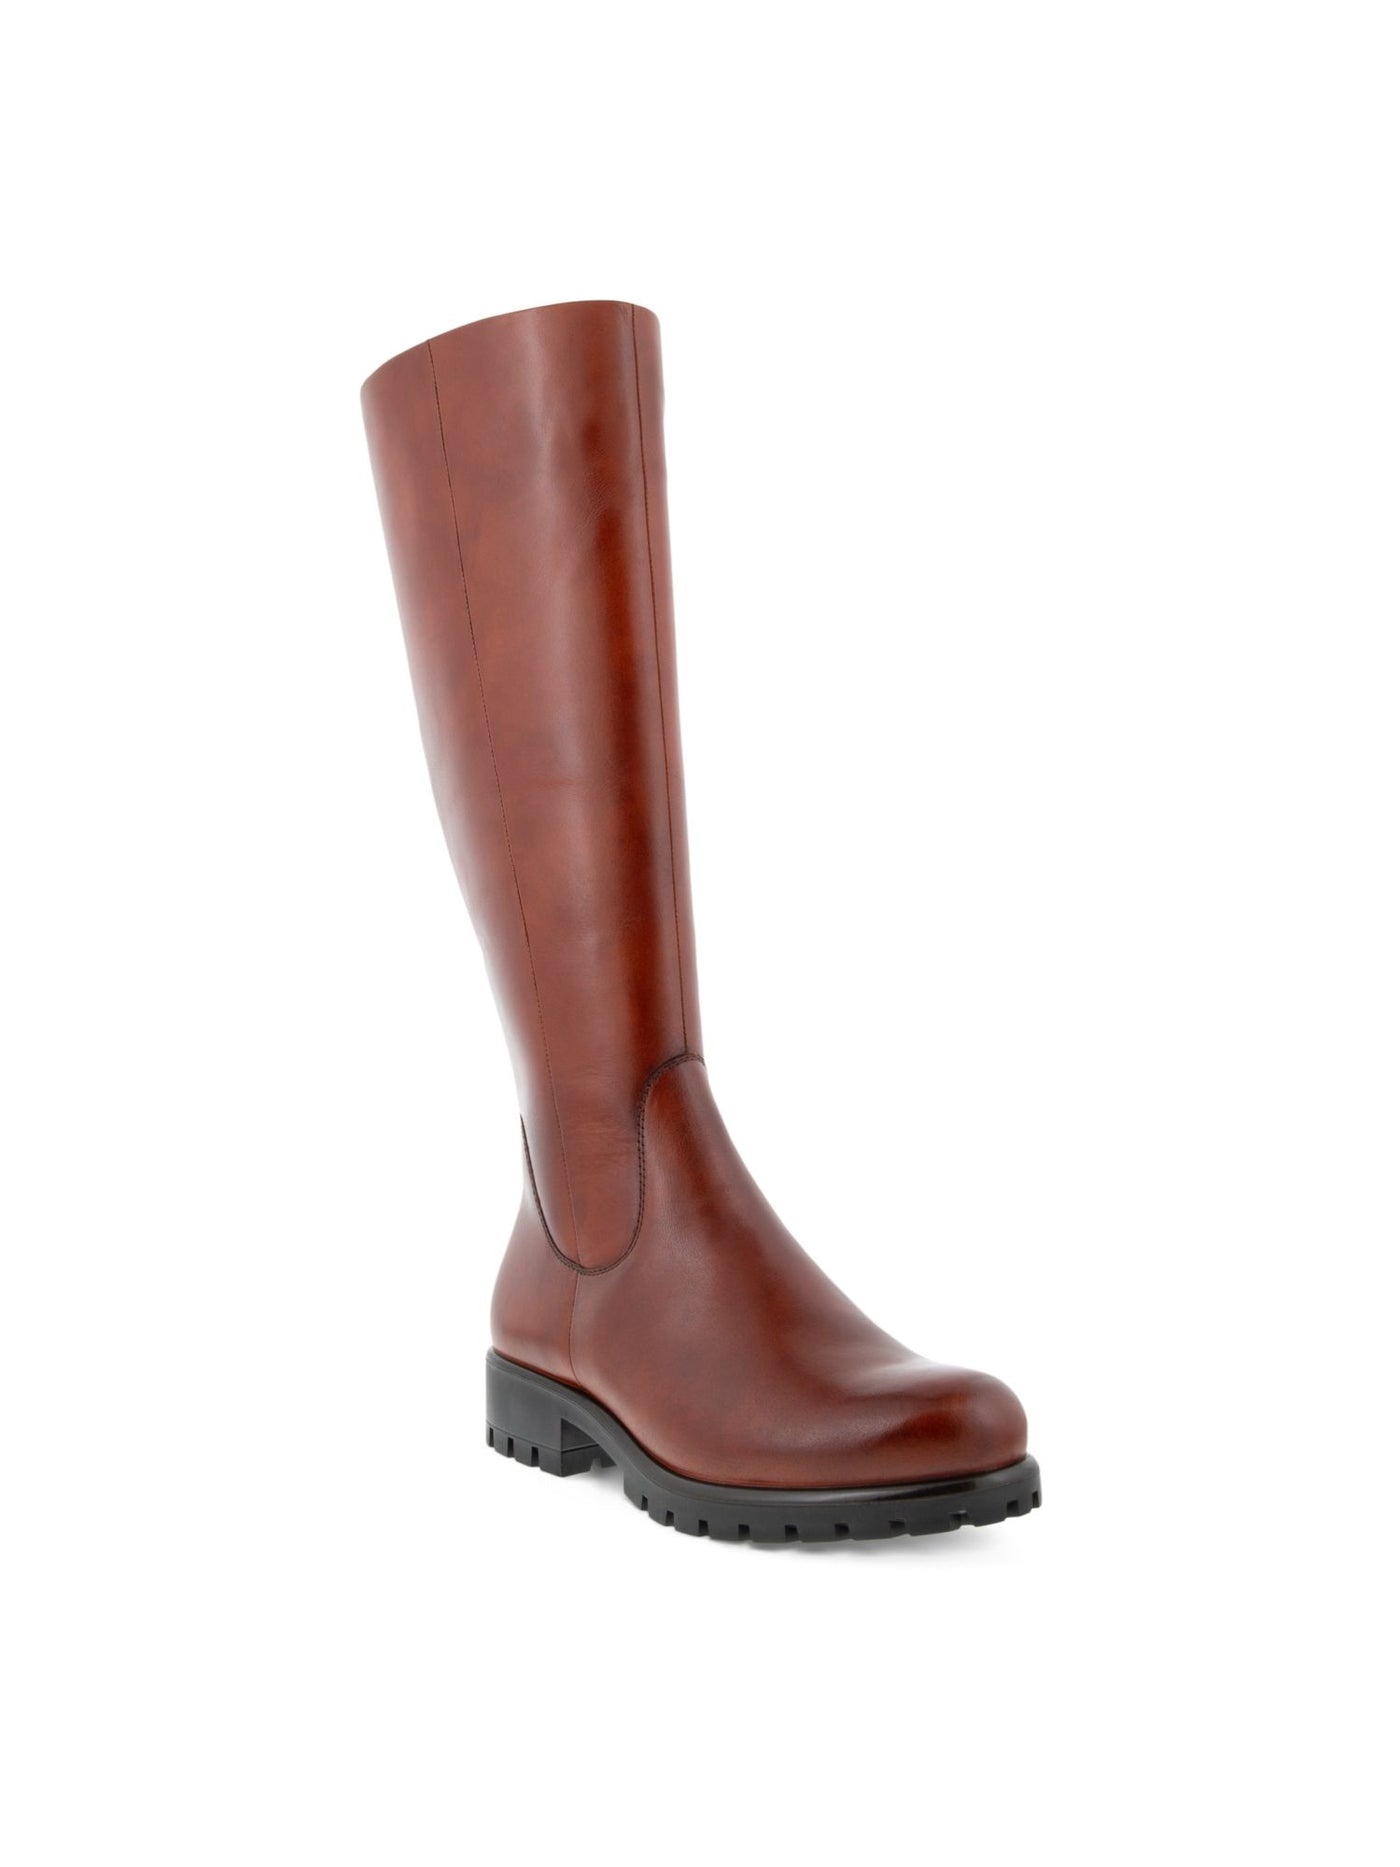 ECCO Womens Cognac Brown Back Zip For Calf Width Adjustment Water Resistant Modtray Round Toe Block Heel Zip-Up Leather Boots Shoes 6.5